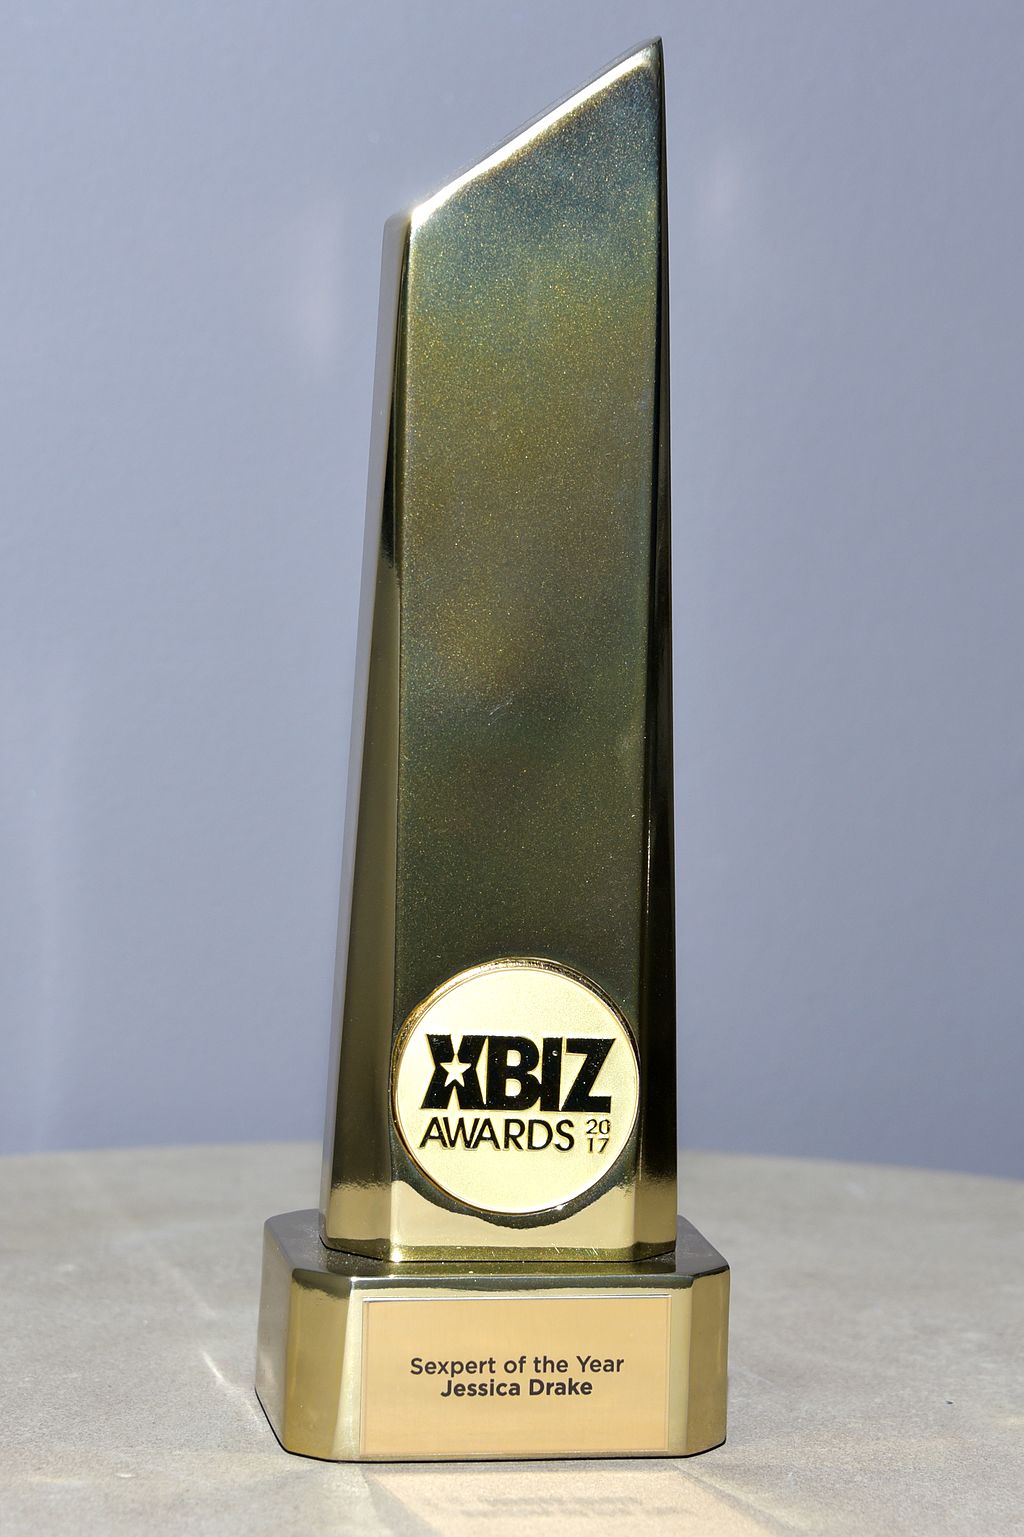 XBIZ Awards image